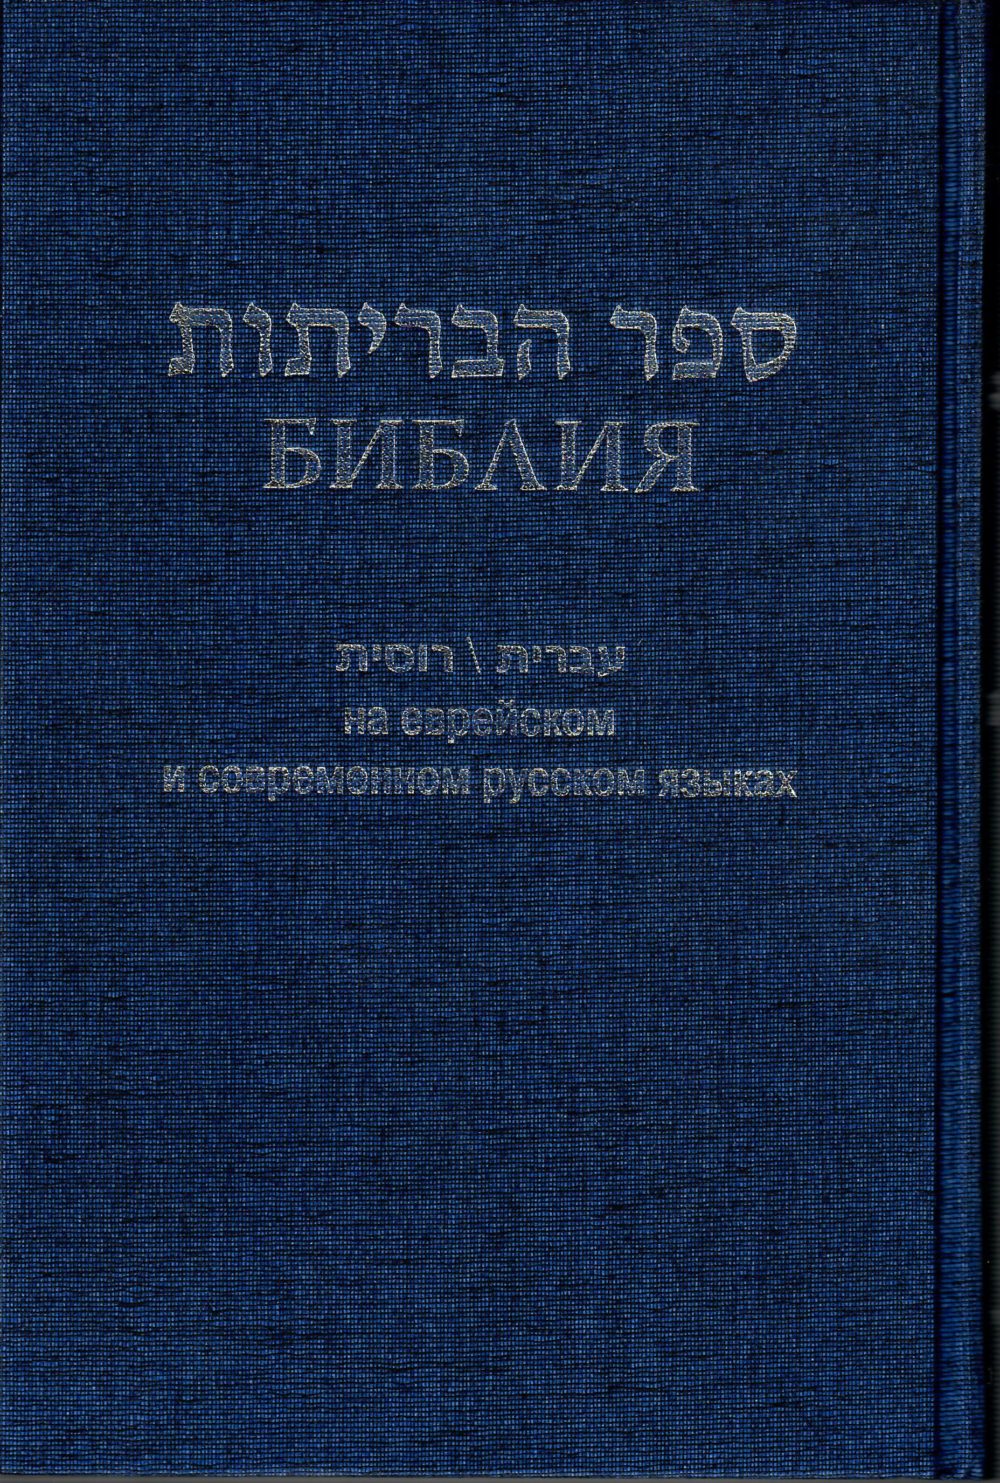 Hebrew-Russian Diglot Bible